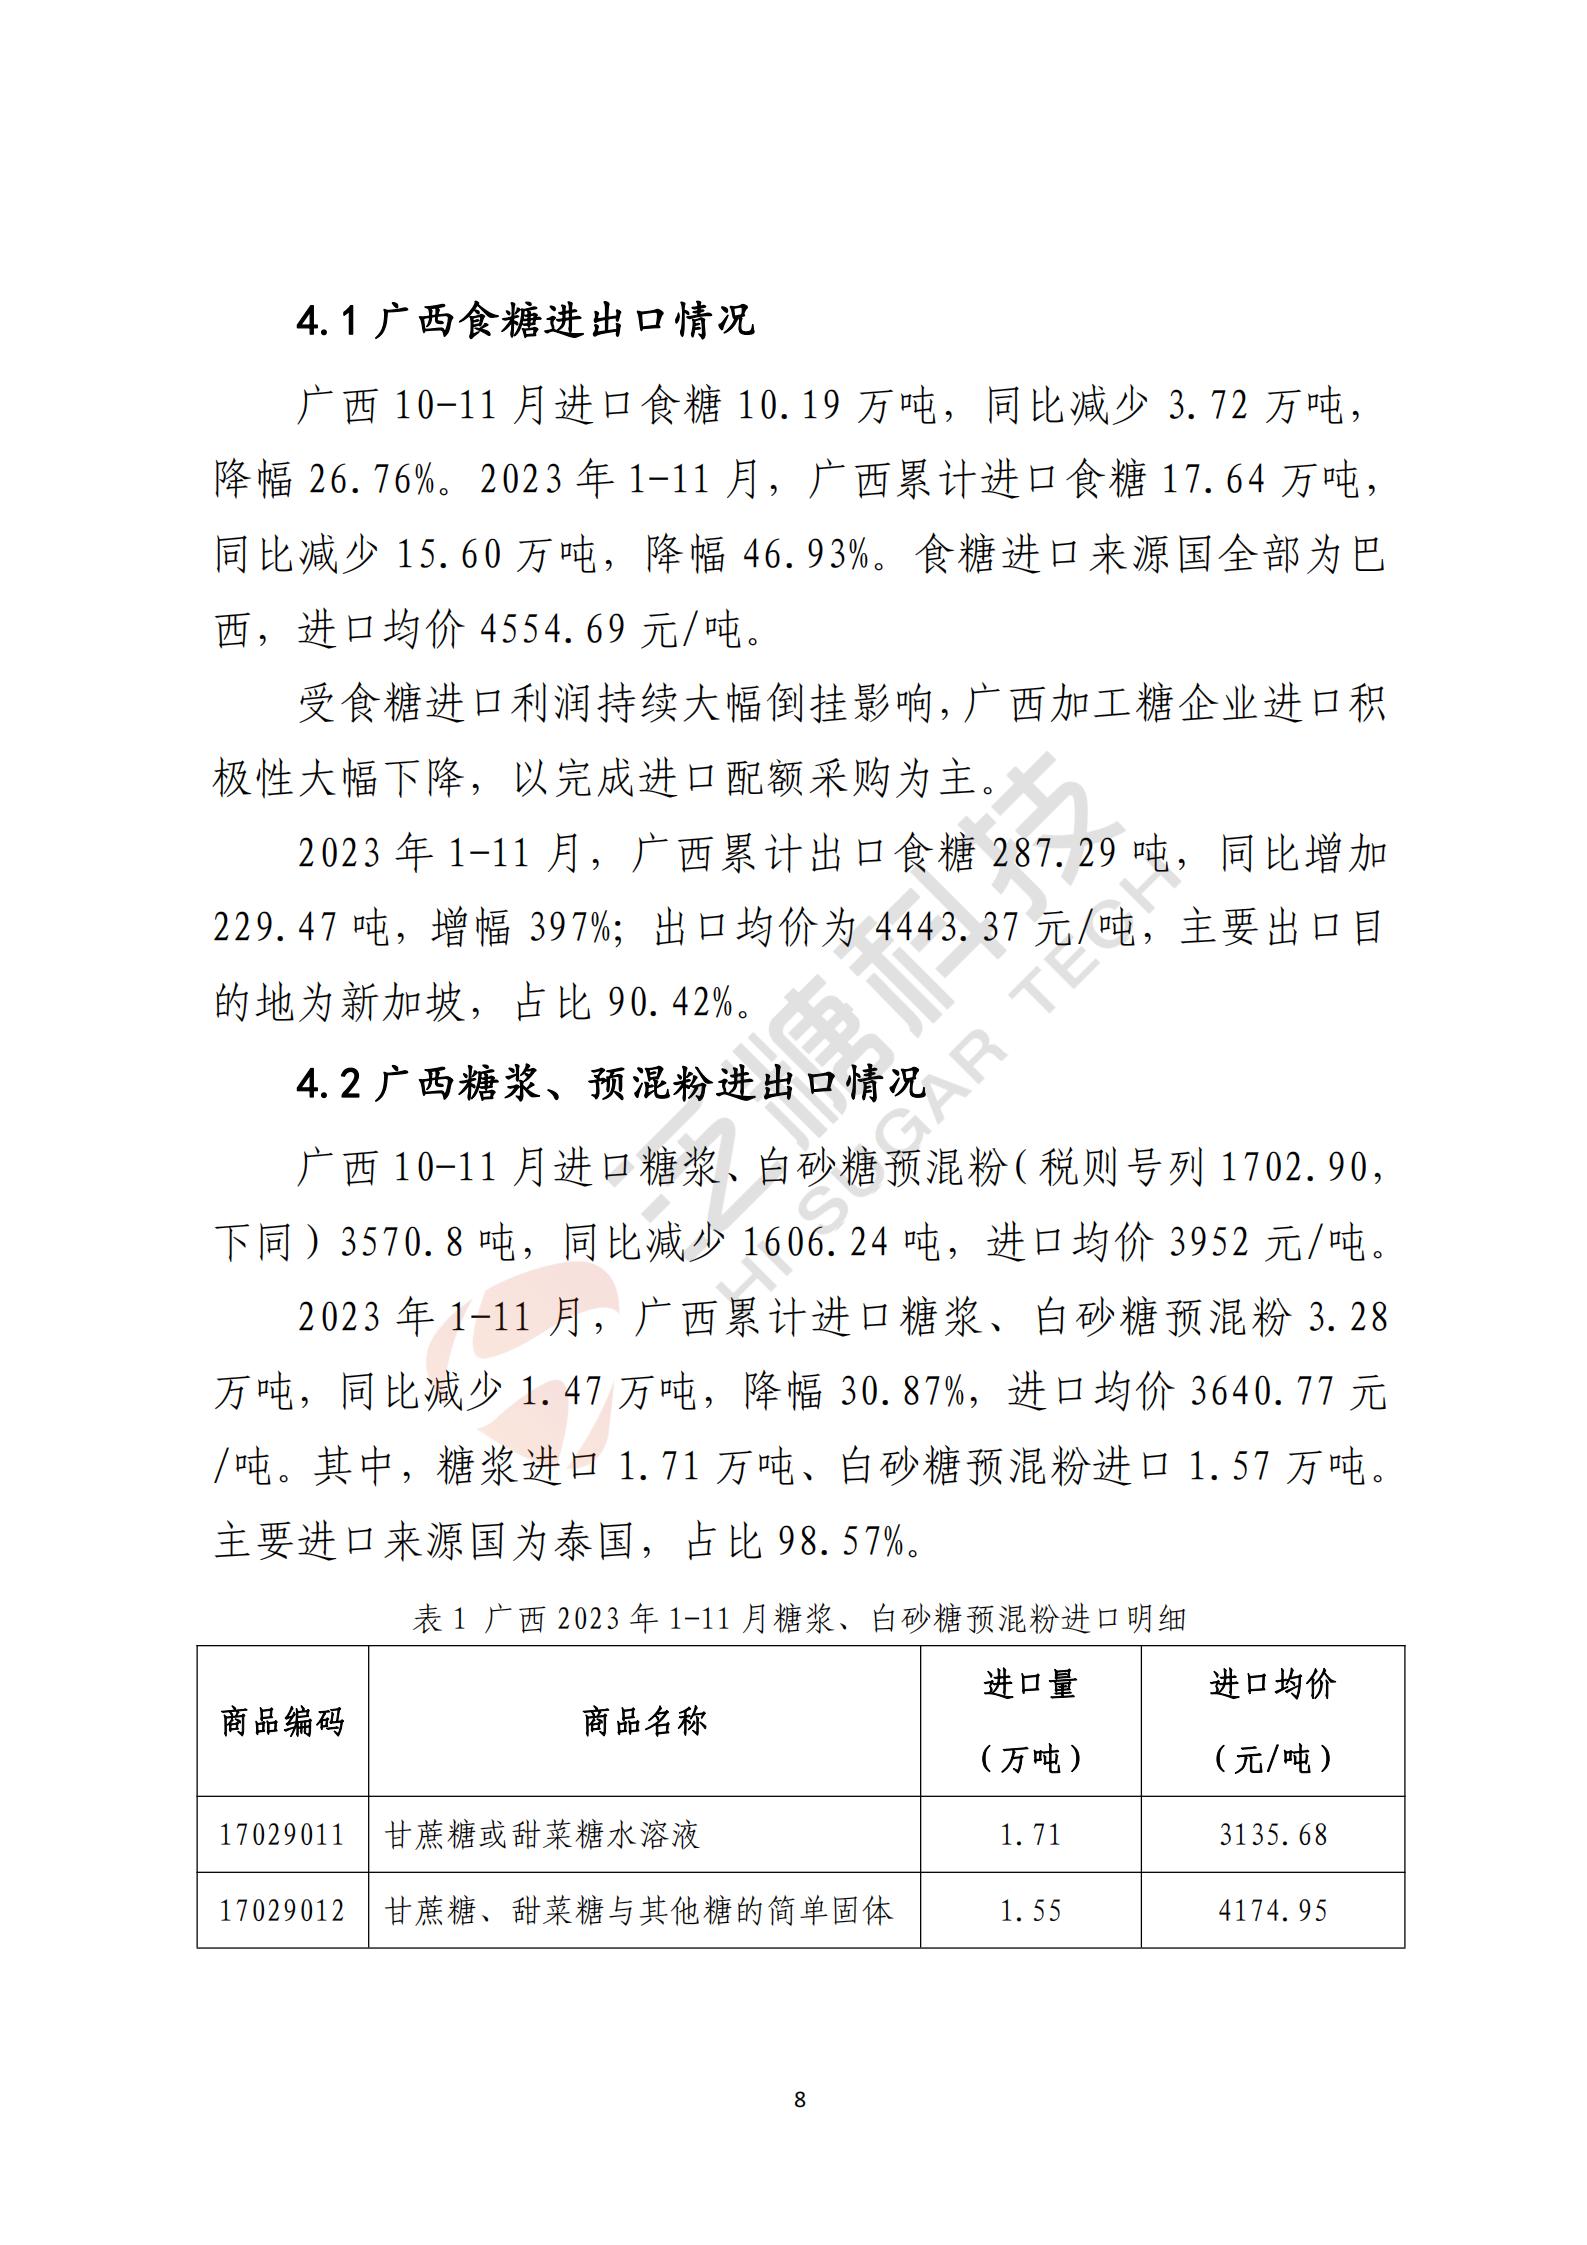 广西食糖产业损害监测预警分析报告2023年第四季度(简化版)(1)_08.jpg